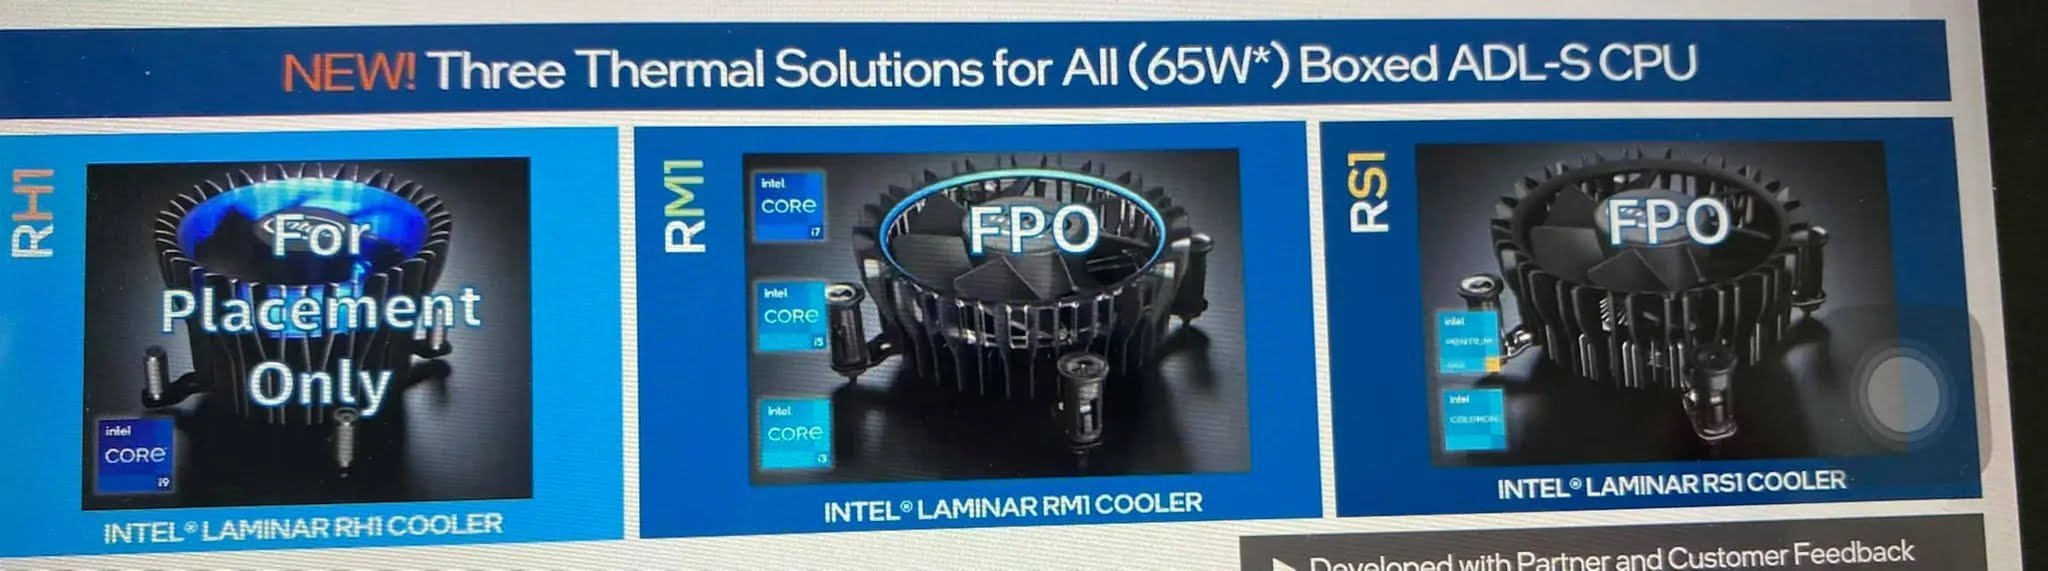 Tin đồn: Intel sử dụng tản nhiệt stock mới dành riêng cho dòng chip Alder Lake - Image 1